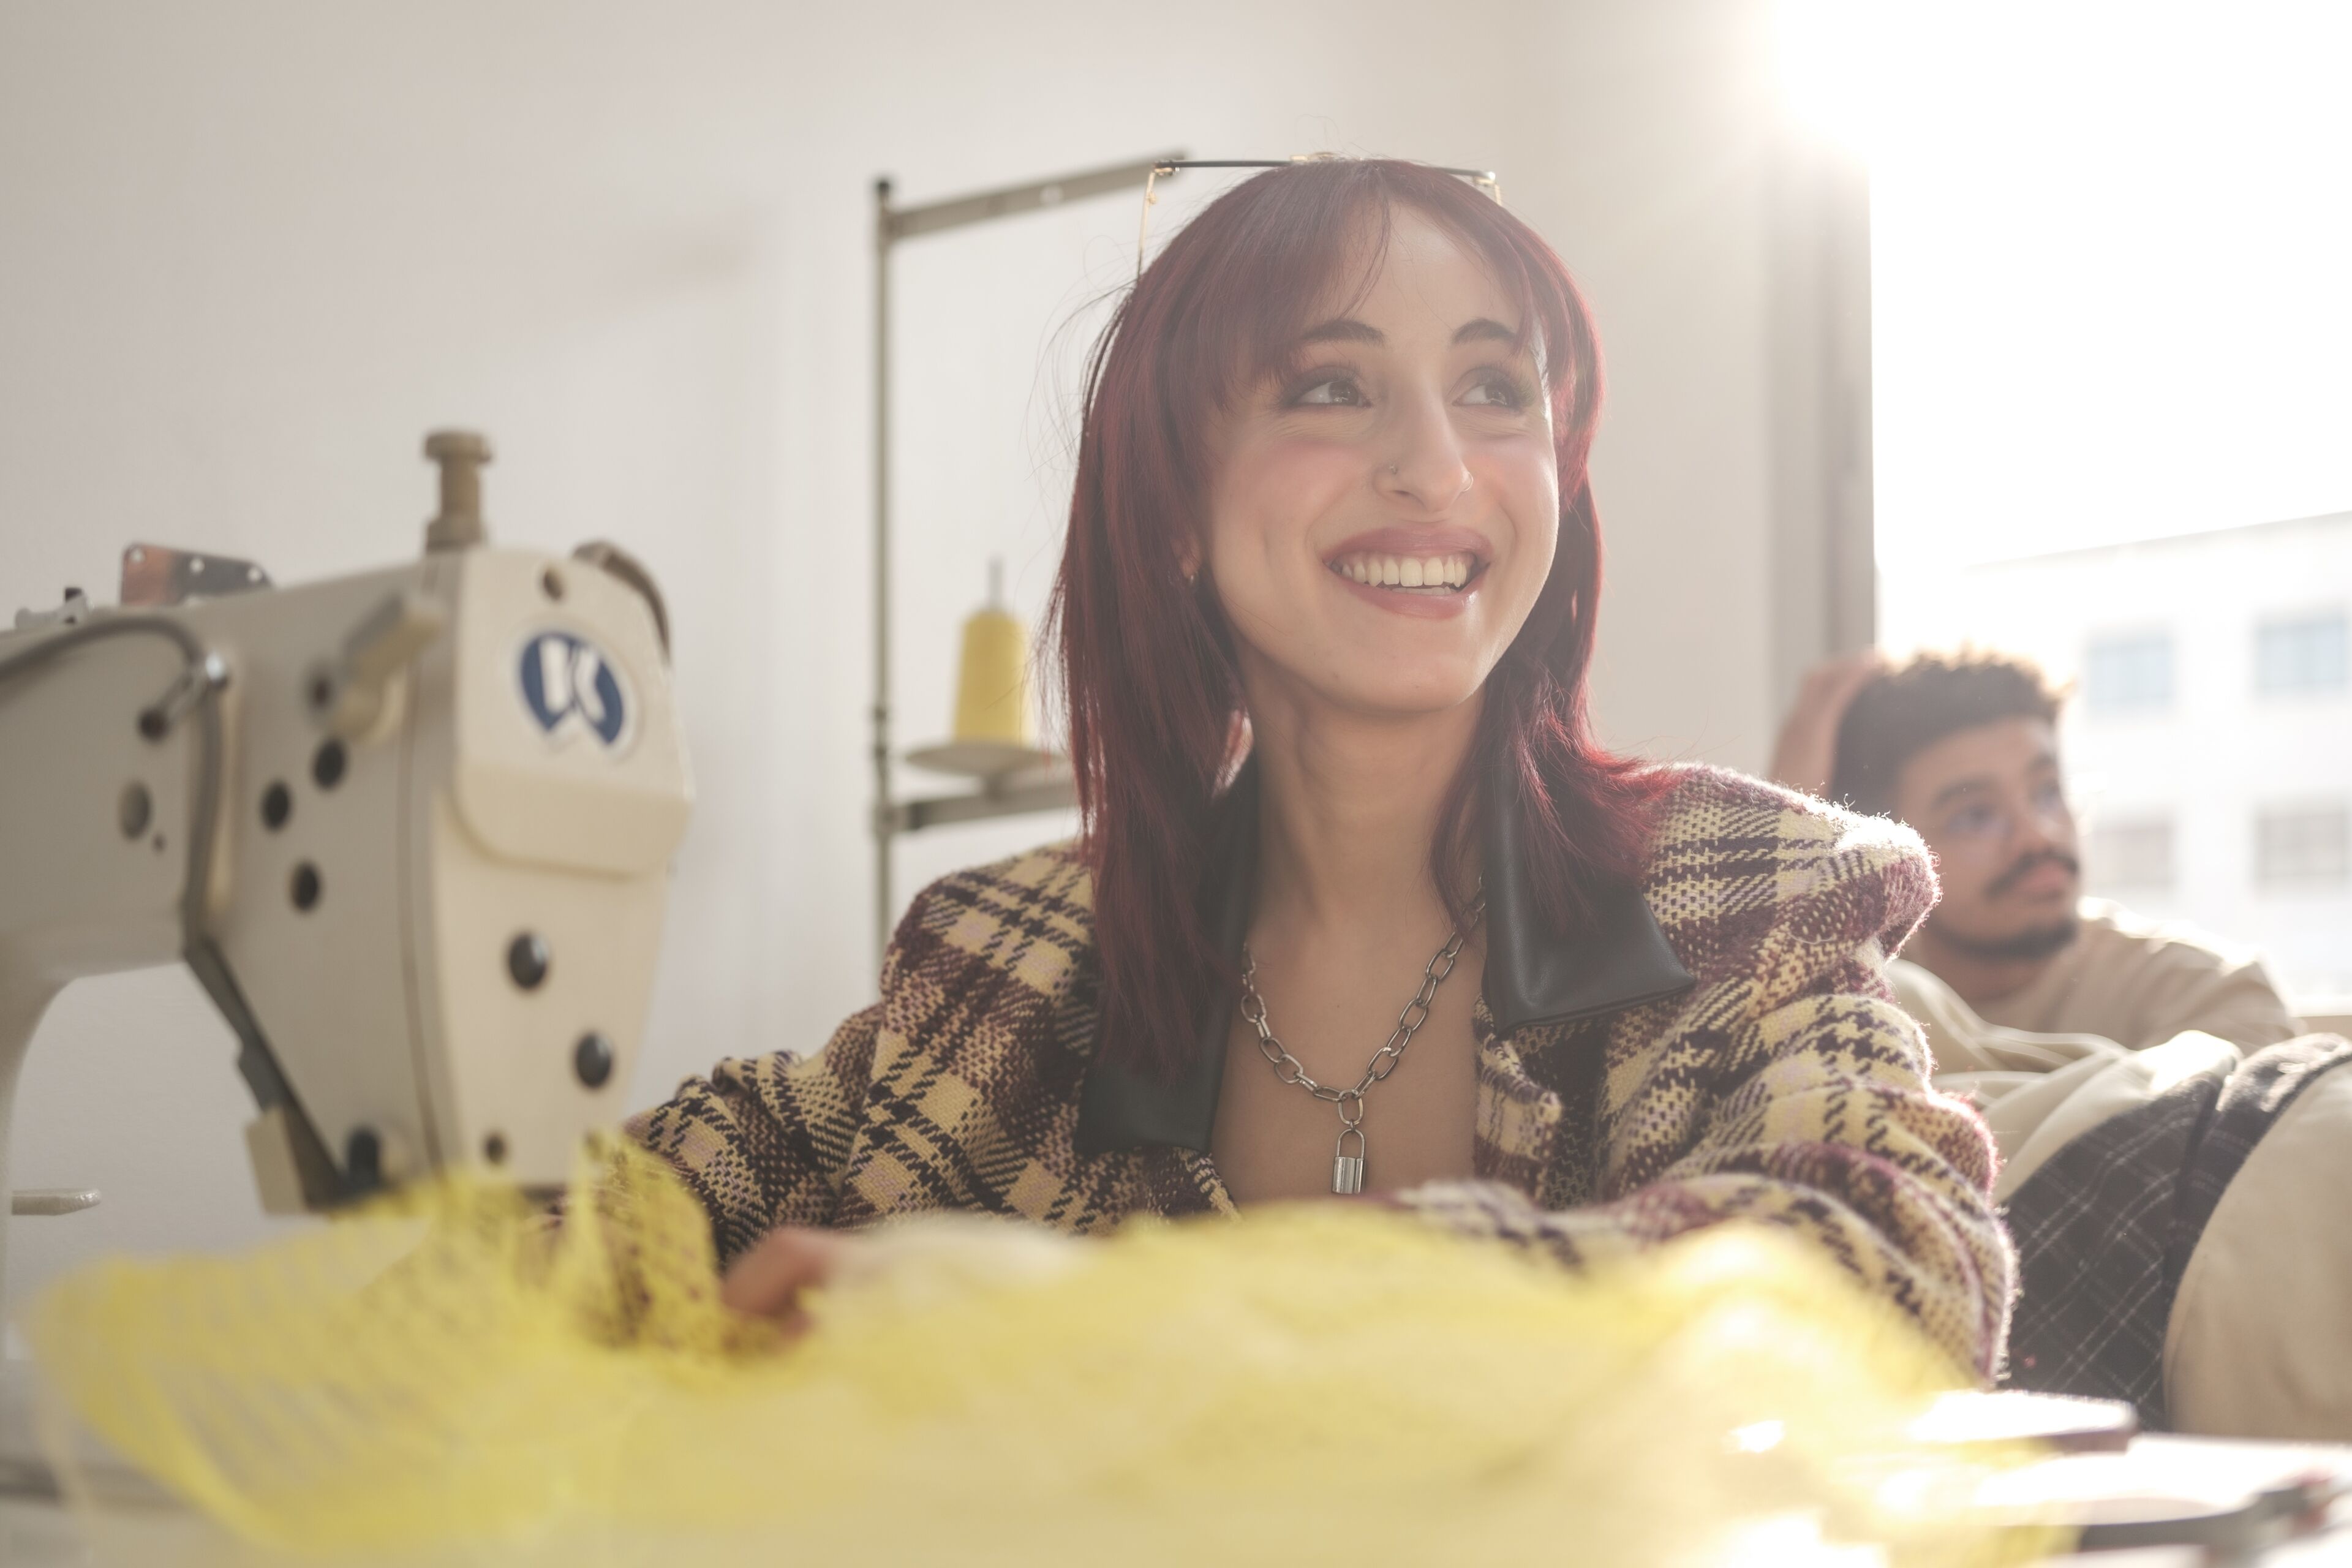 Une femme souriante aux cheveux rouges travaillant sur un tissu jaune avec une machine à coudre, dans un atelier bien éclairé, avec un collègue masculin en arrière-plan.